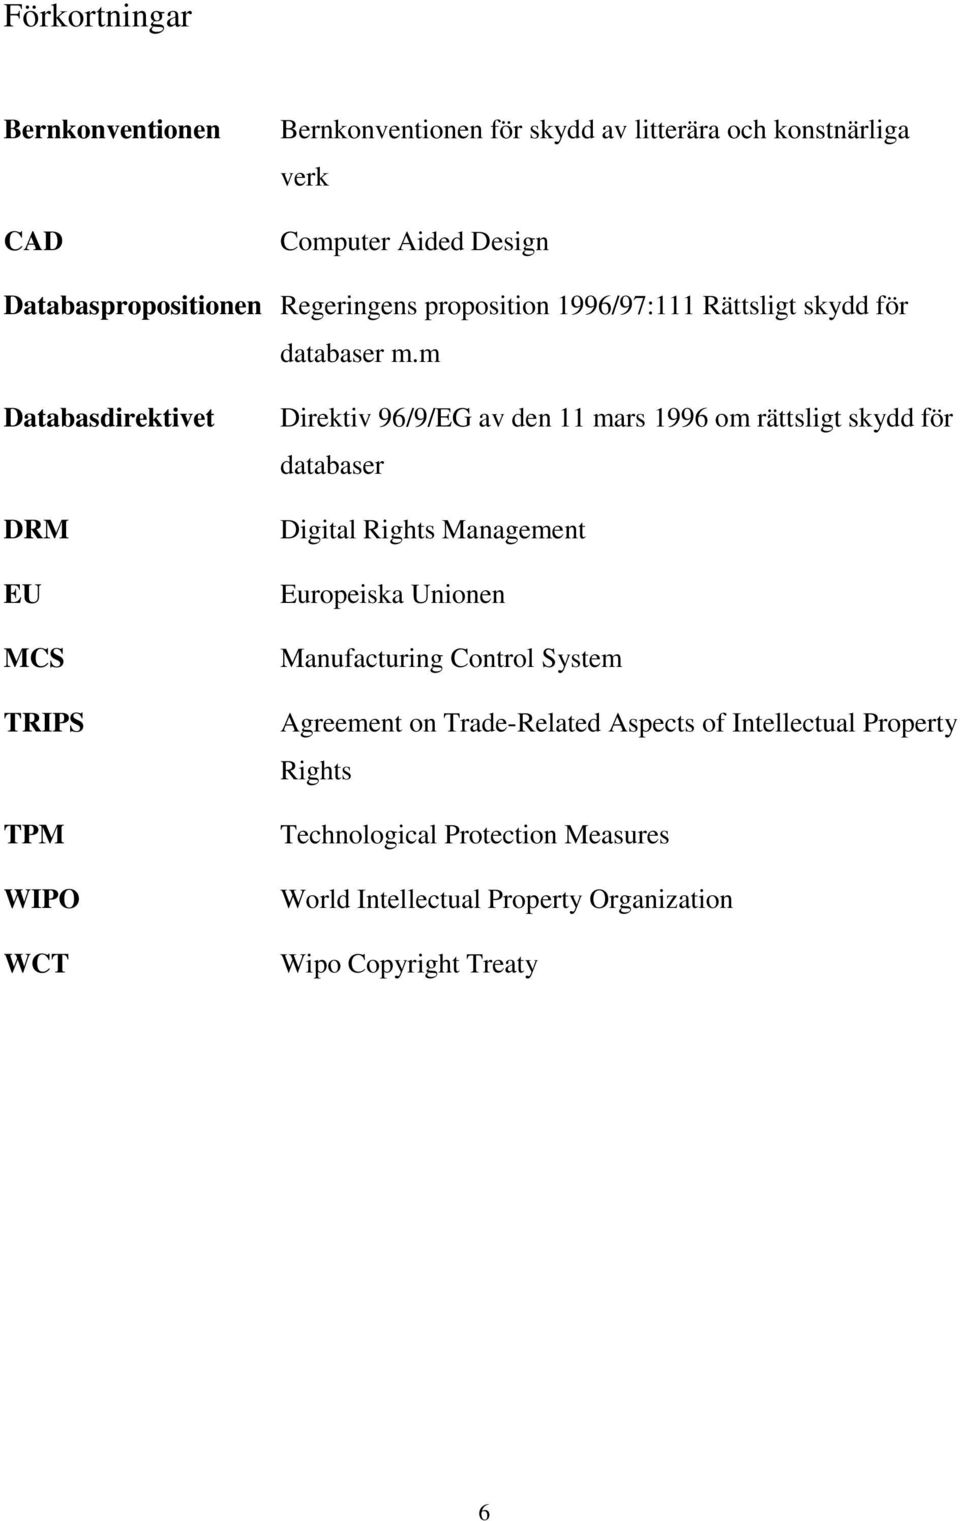 m Databasdirektivet DRM EU MCS TRIPS TPM WIPO WCT Direktiv 96/9/EG av den 11 mars 1996 om rättsligt skydd för databaser Digital Rights